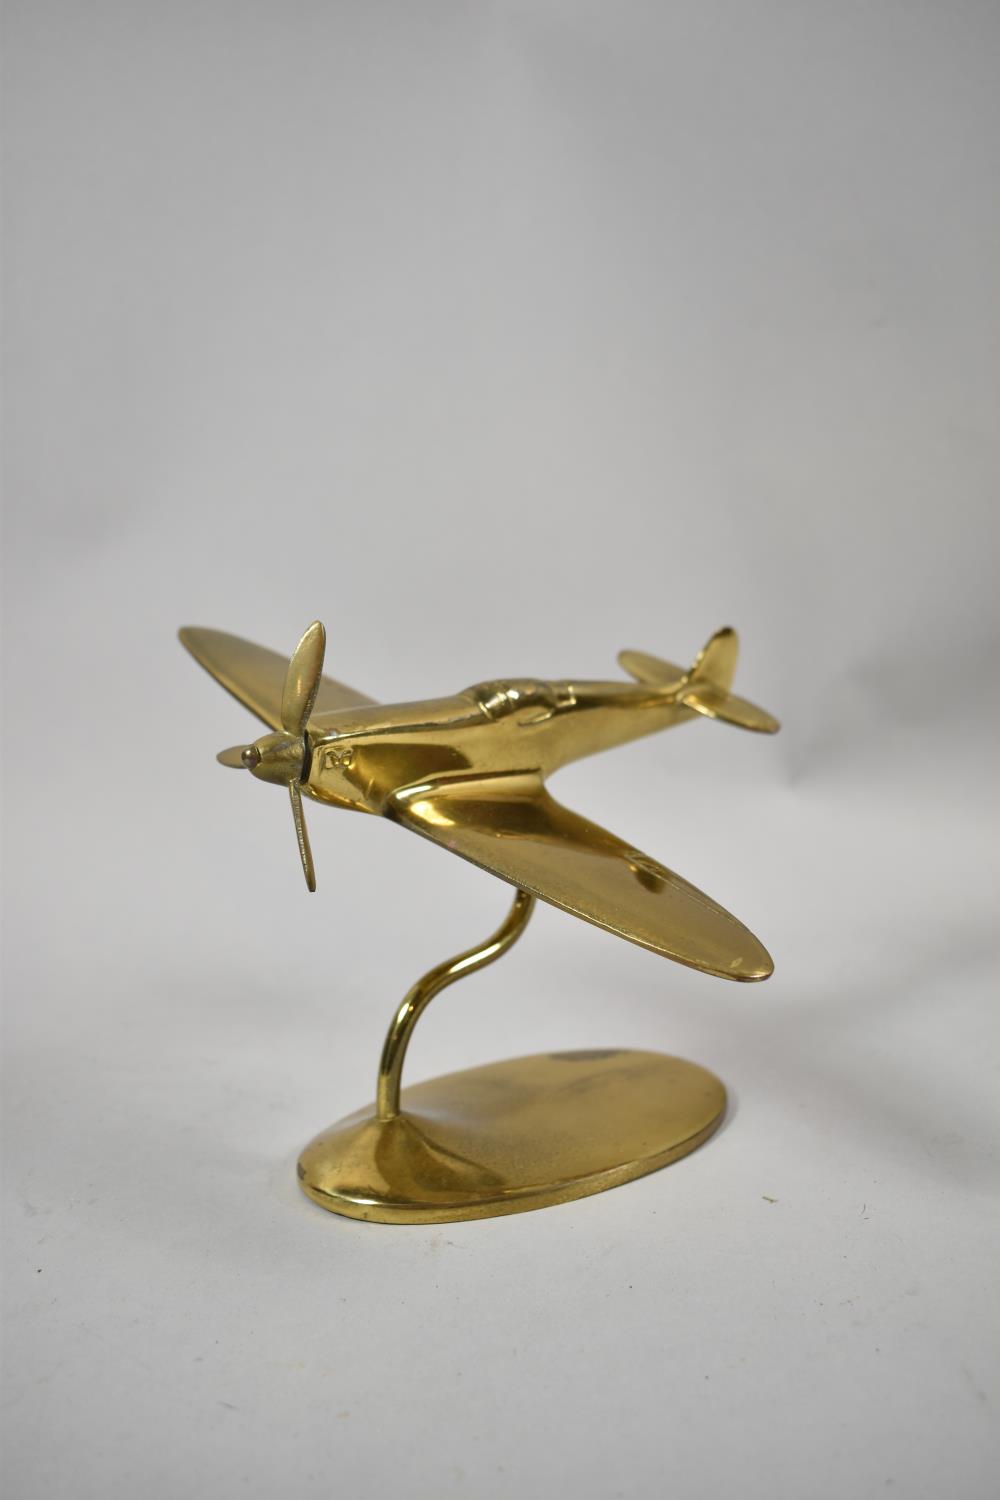 A Desk Top Brass Model of a Spitfire in Flight, 18cm Long